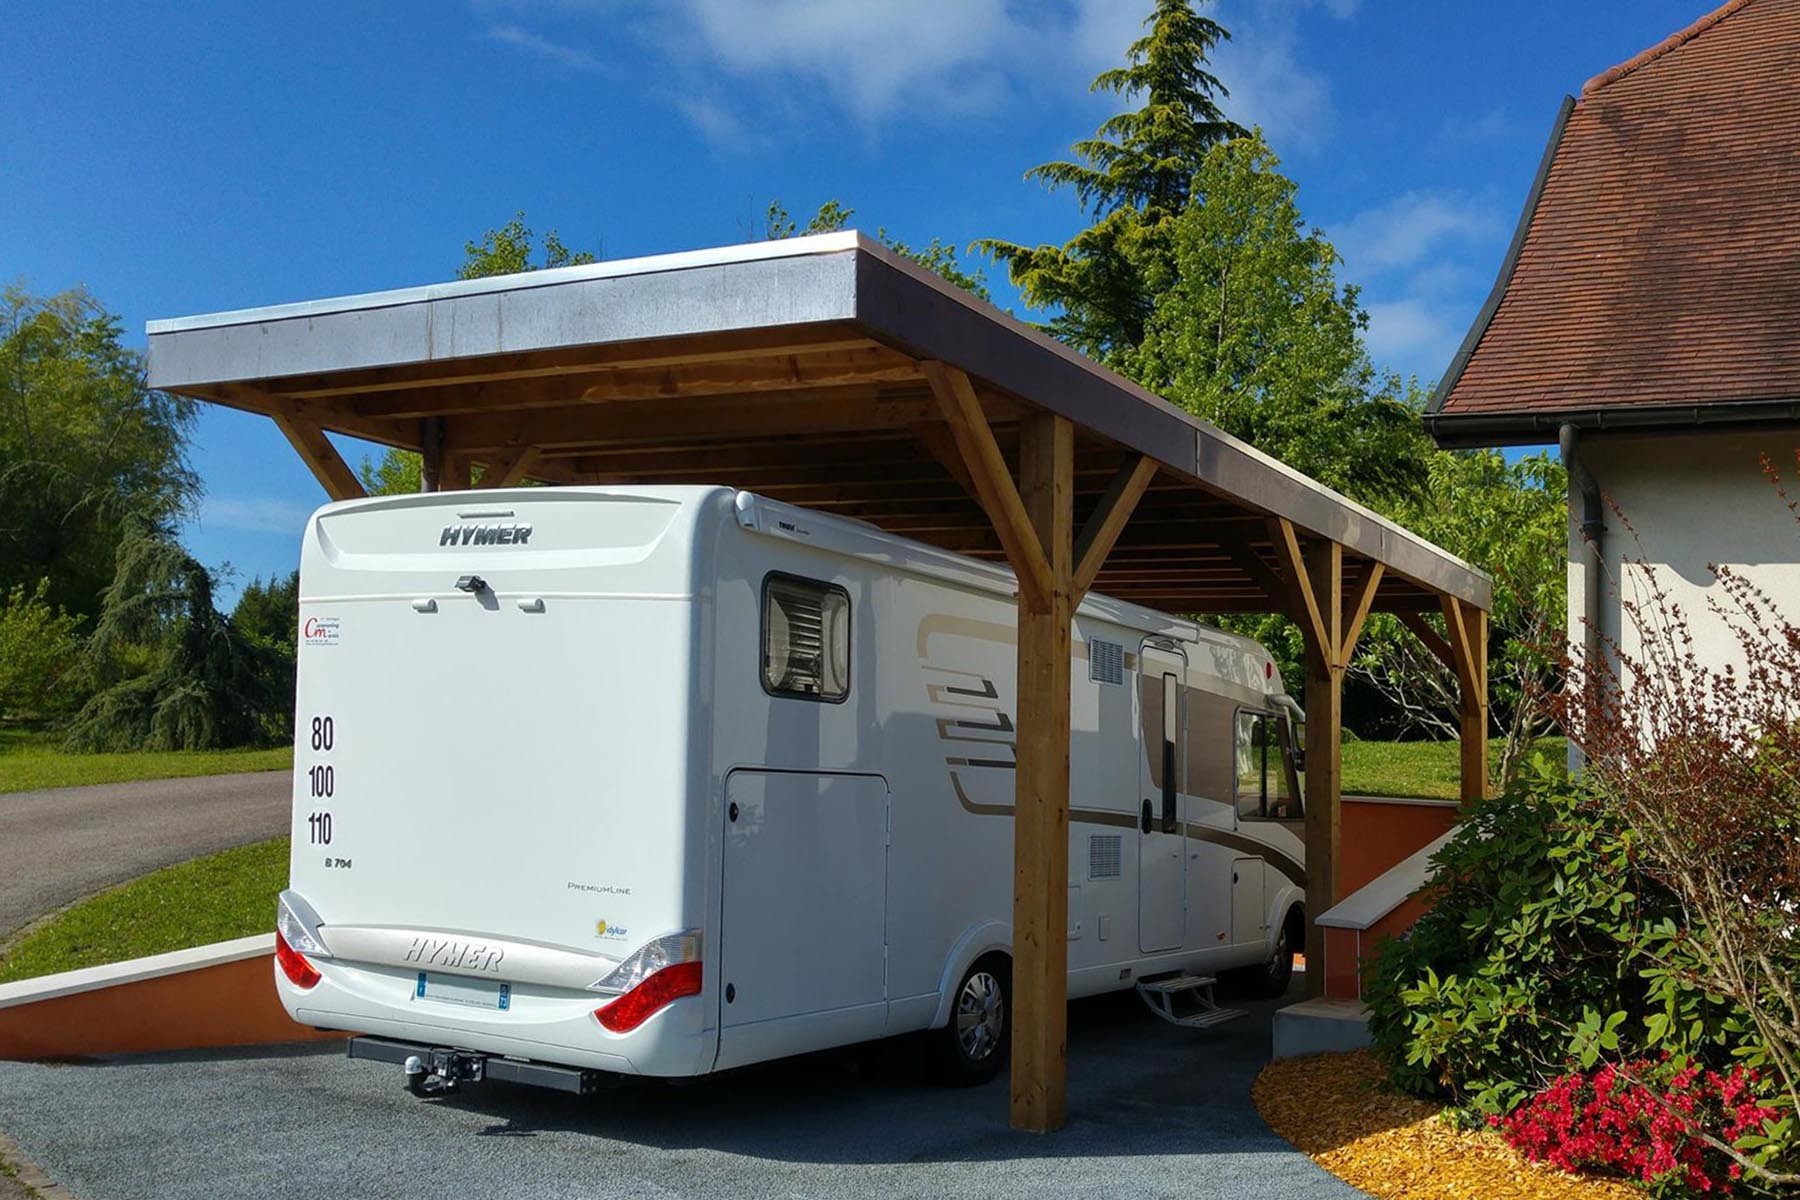  GADLANE Cales pour Camping-Car - Lot de 2 Niveau Camping Car  pour Camping-Cars et Remorques - Résistant aux UV, Blocs de Rampe Camping  Car Durables pour Caravane (Capacité de Charge